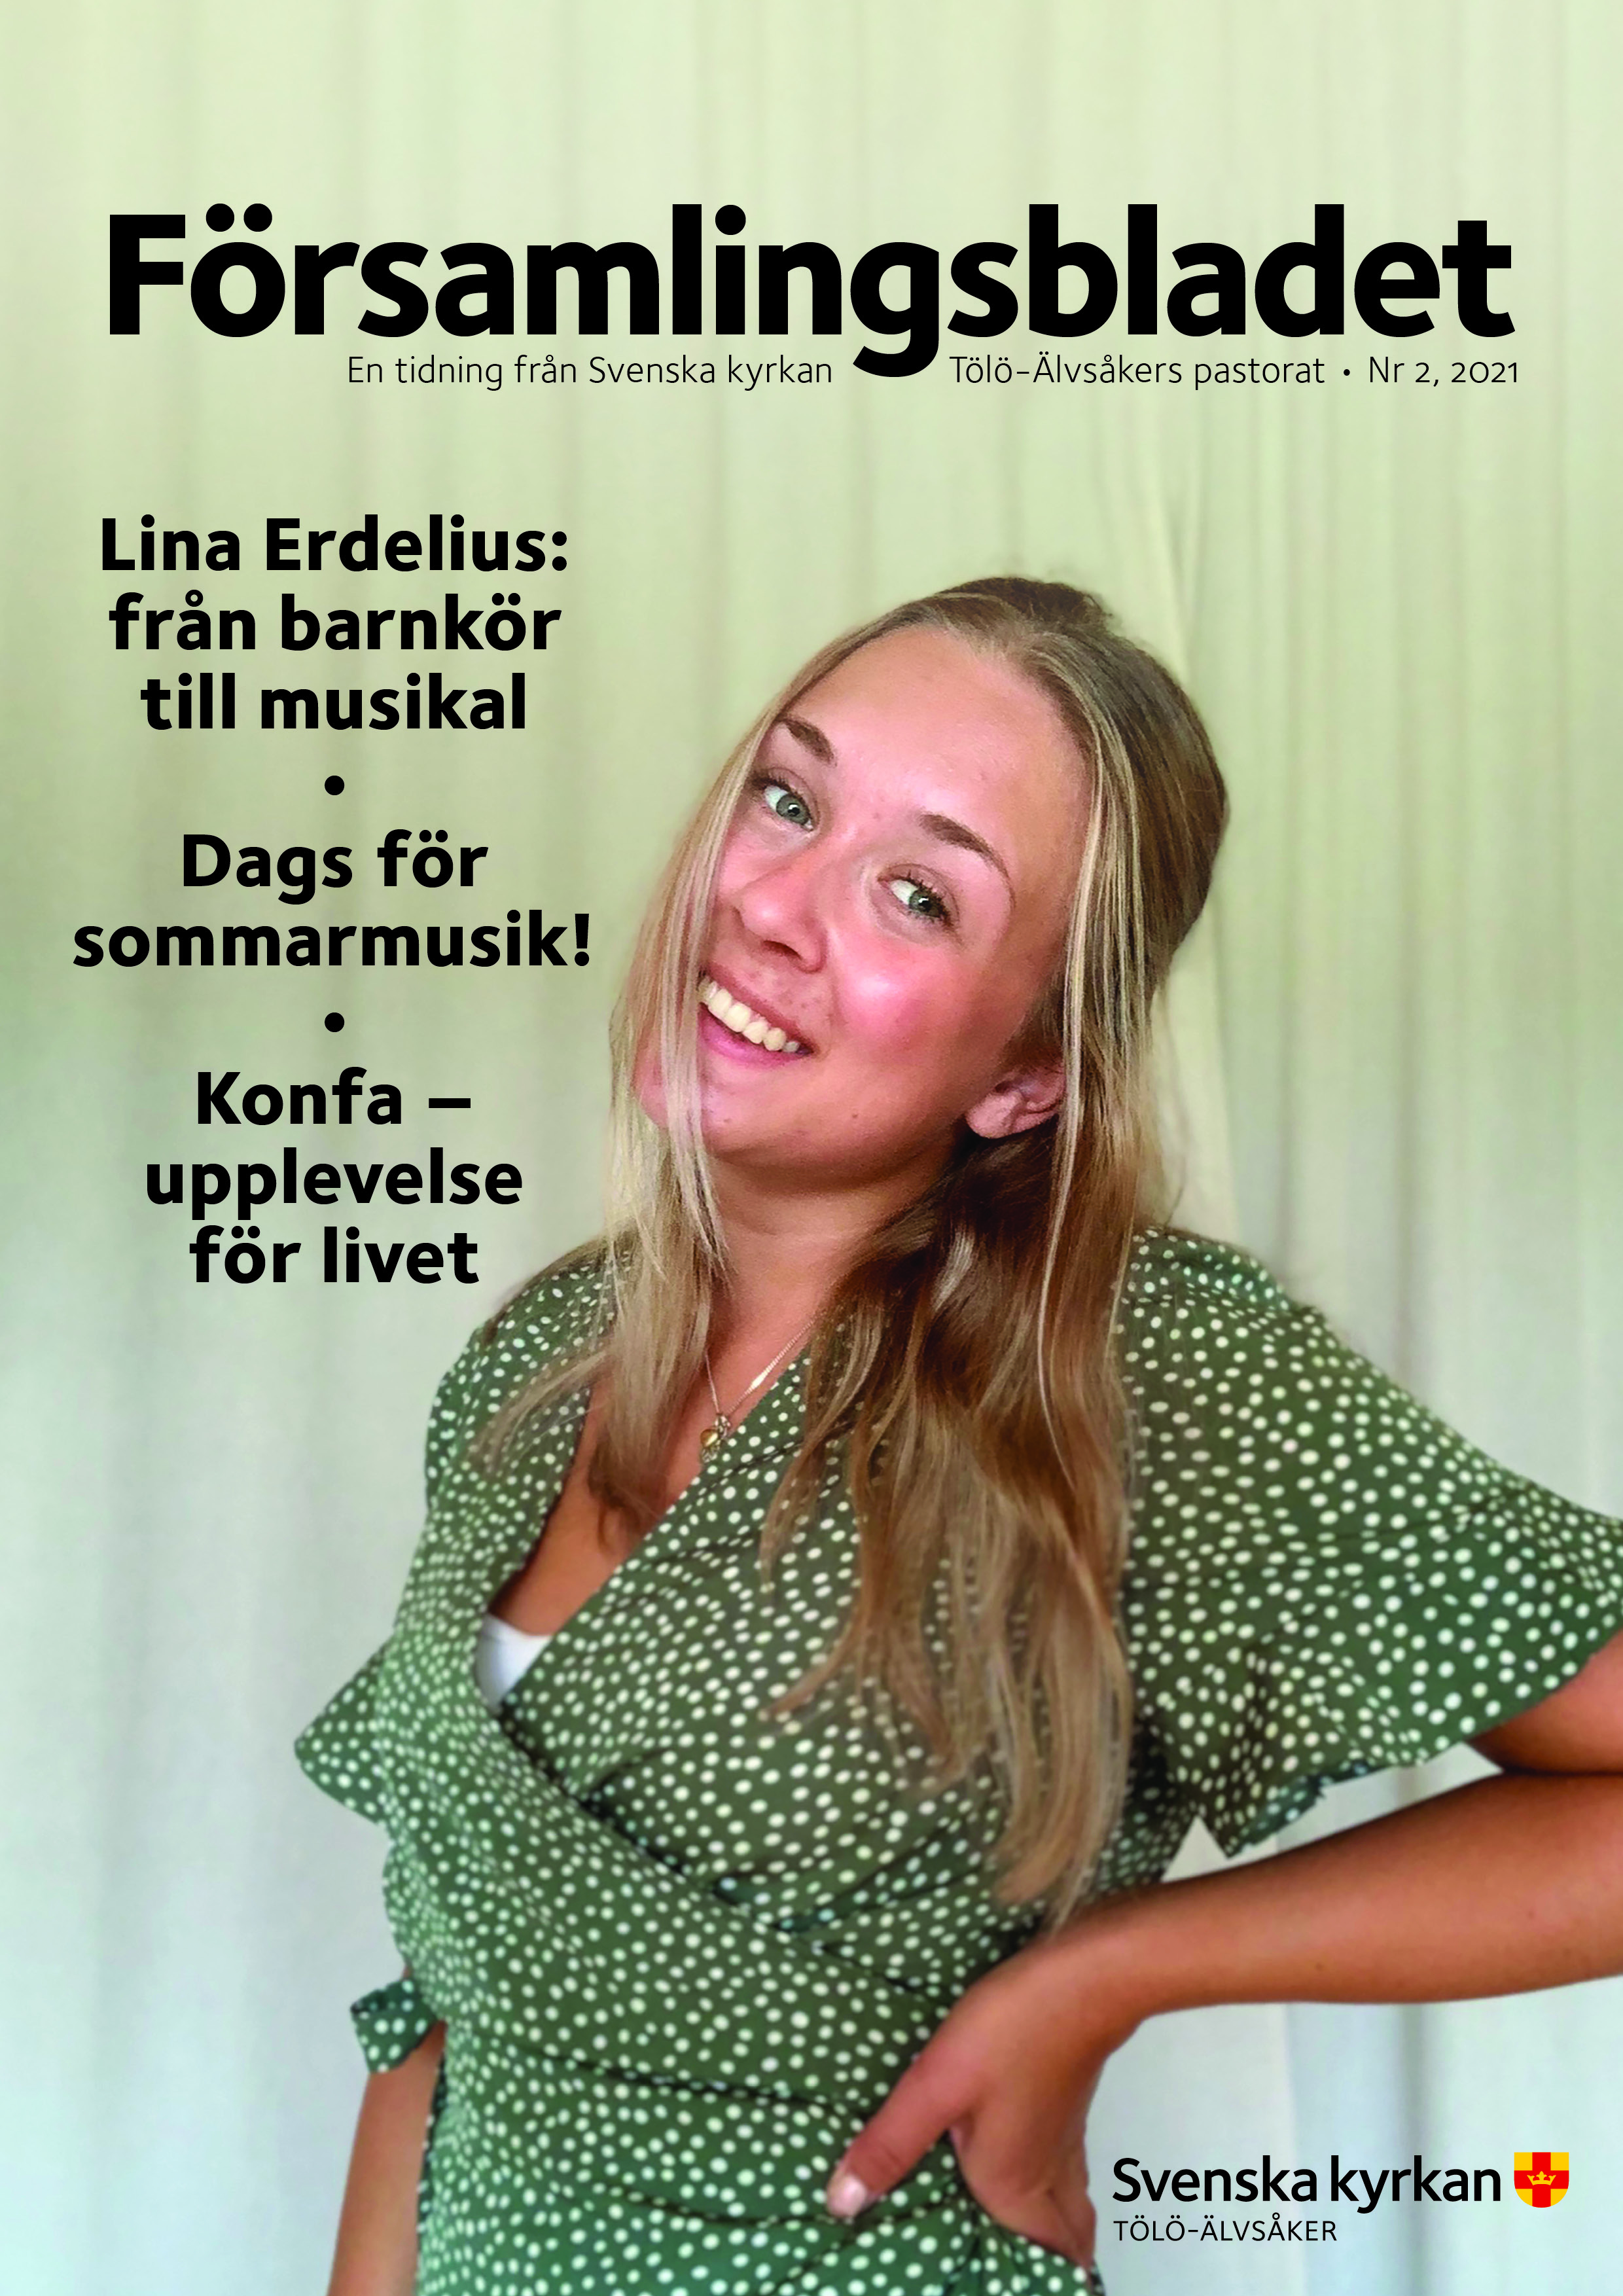 Lina Erdelius: från konfa till musikal, Dags för sommarmusik, Konfa – en upplevelse för livet.